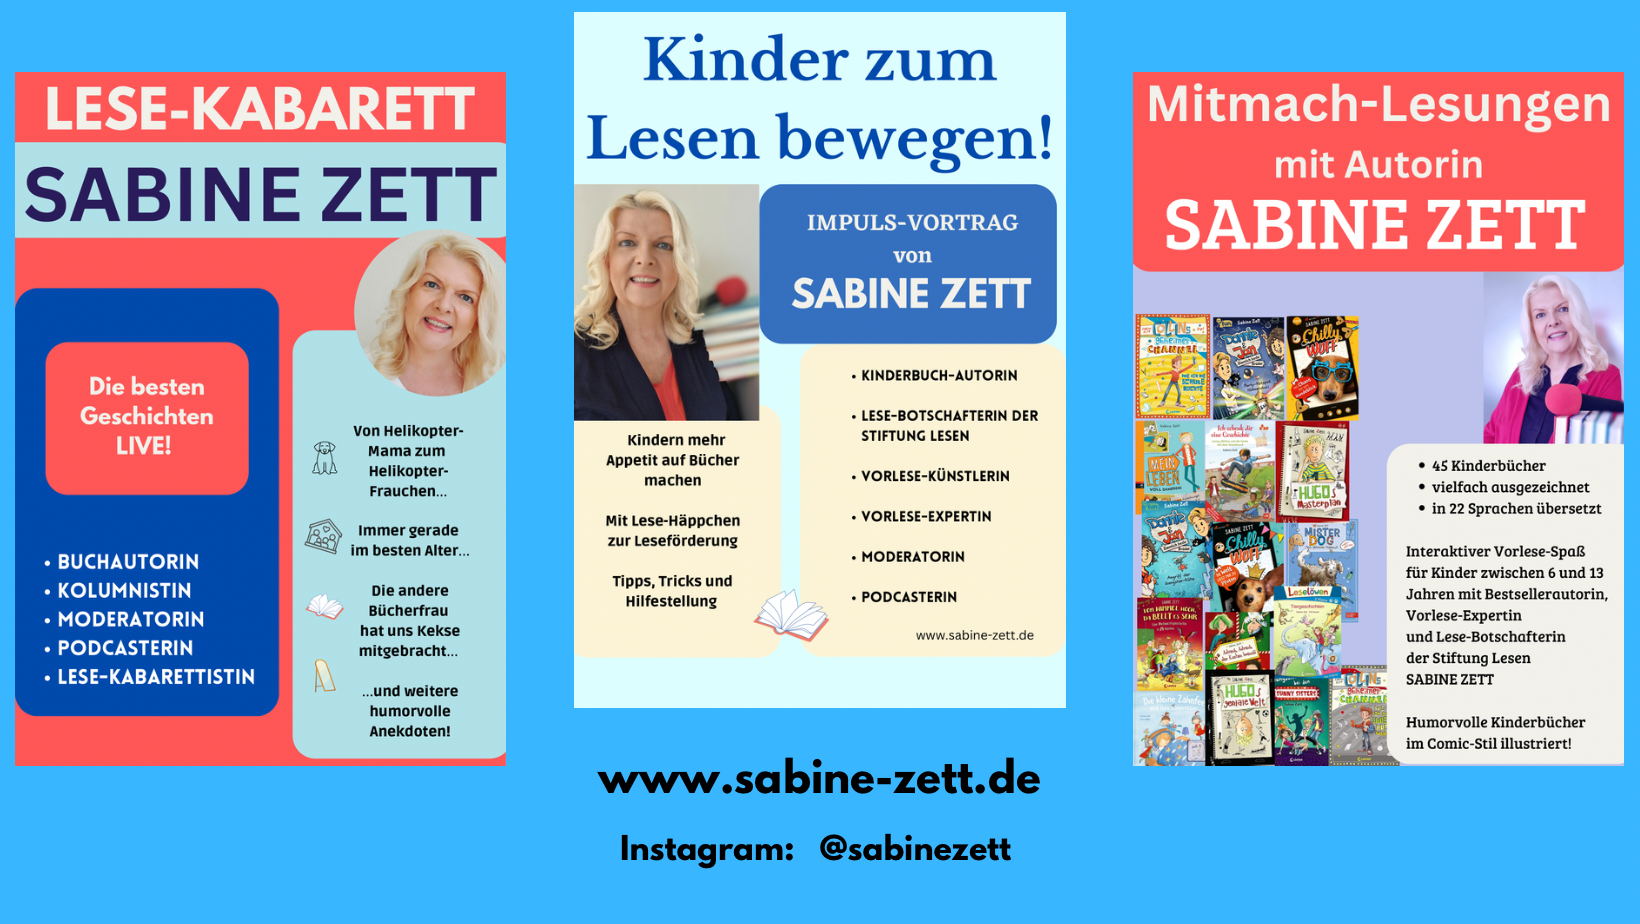 (c) Sabine-zett.de